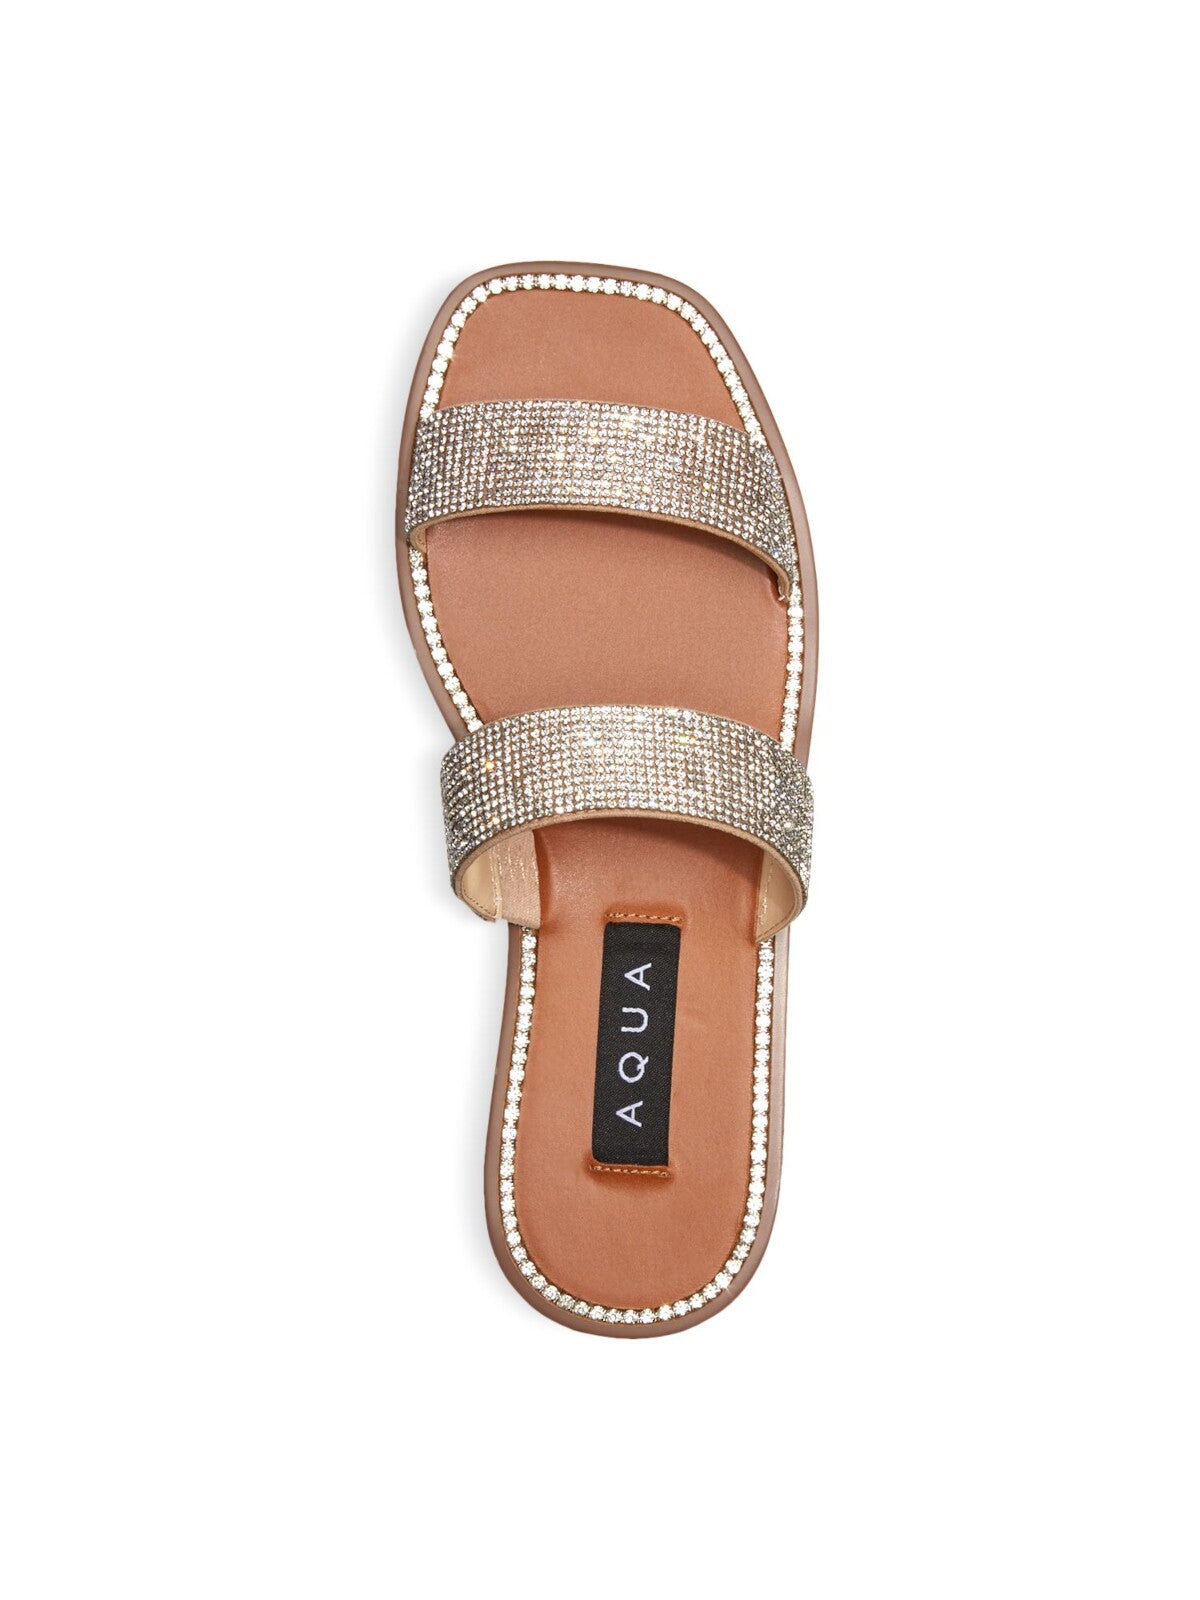 AQUA Womens Beige Studded Glow Square Toe Slip On Slide Sandals Shoes 9.5 M